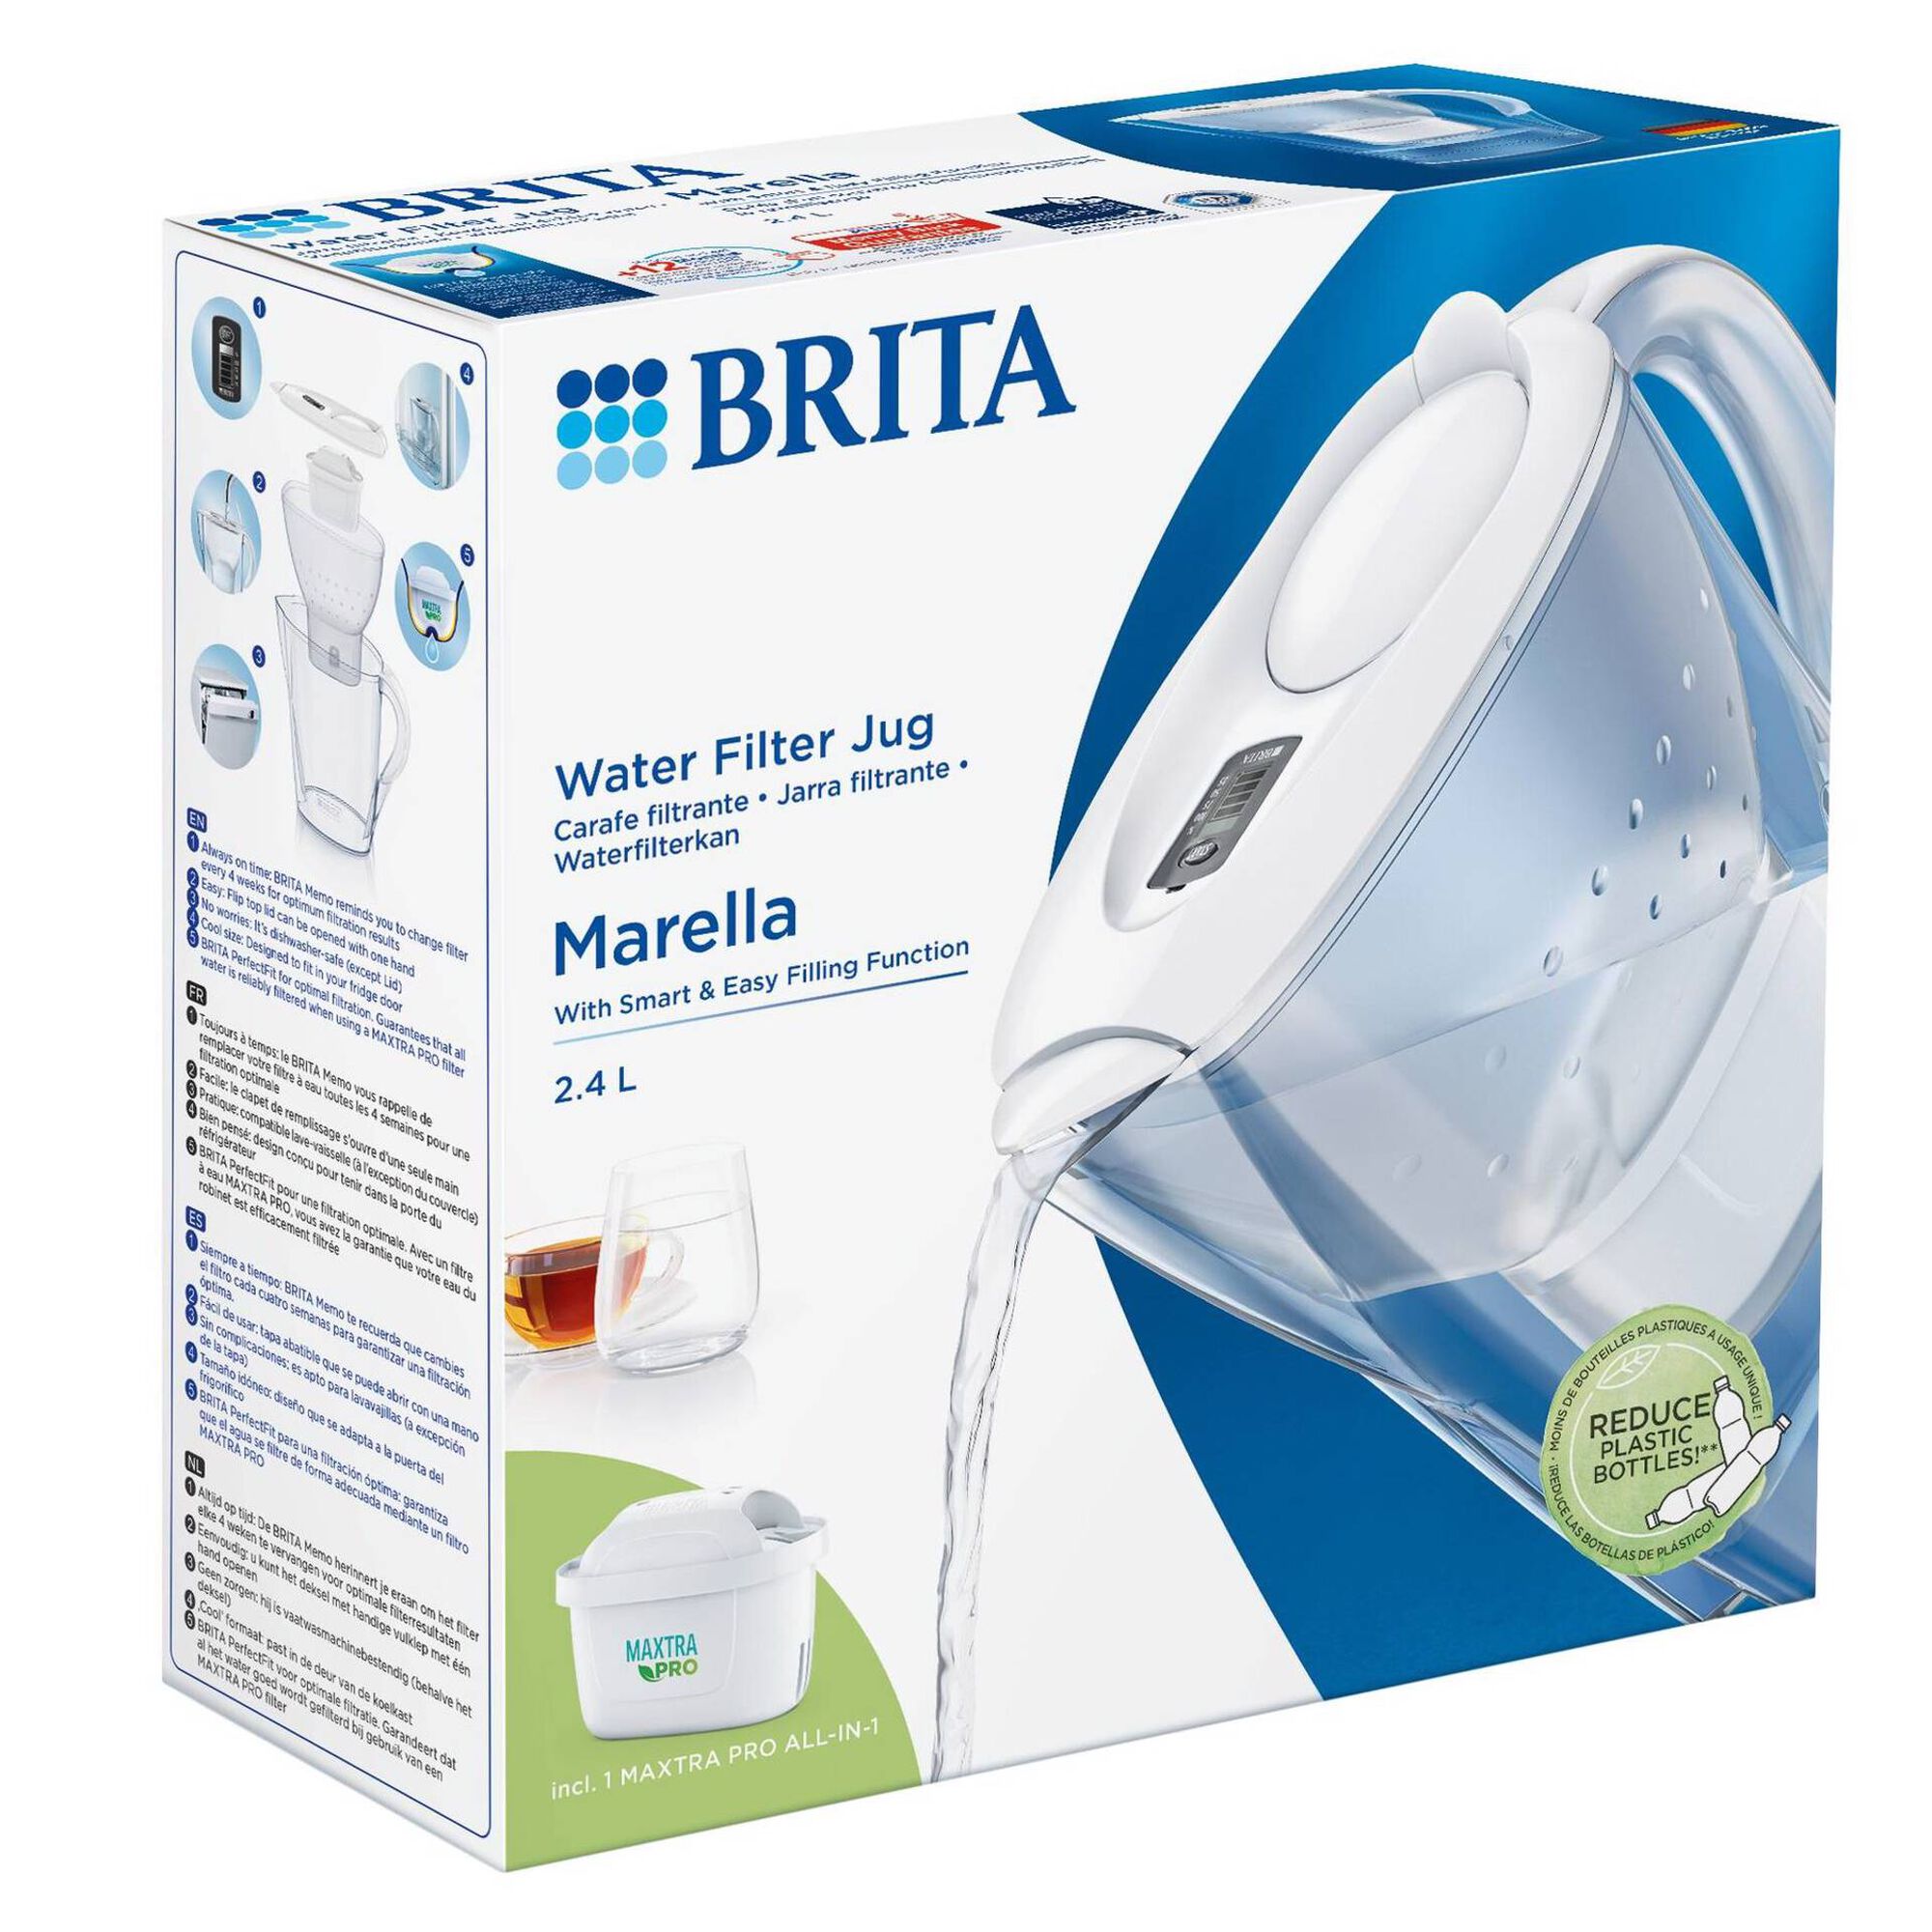 Tazza filtrante BRITA Marella XL 2,4 L Maxtra+